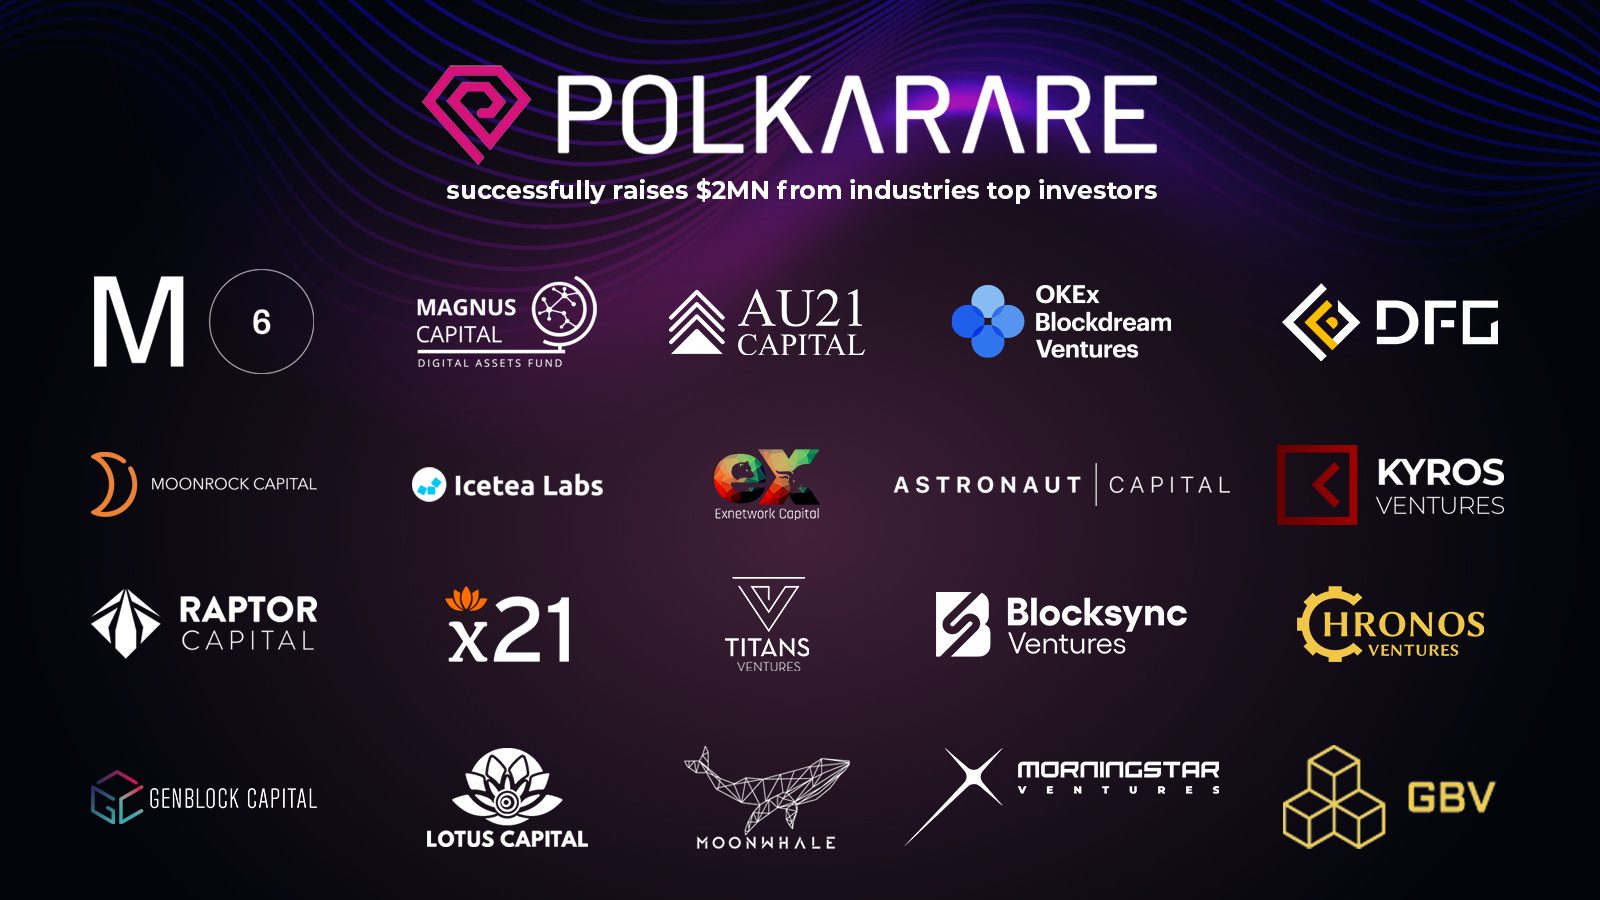 PolkaRare gọi vốn lên đến 2 triệu USD từ vòng seed round và private round, với sự tham gia của Kyros Ventures